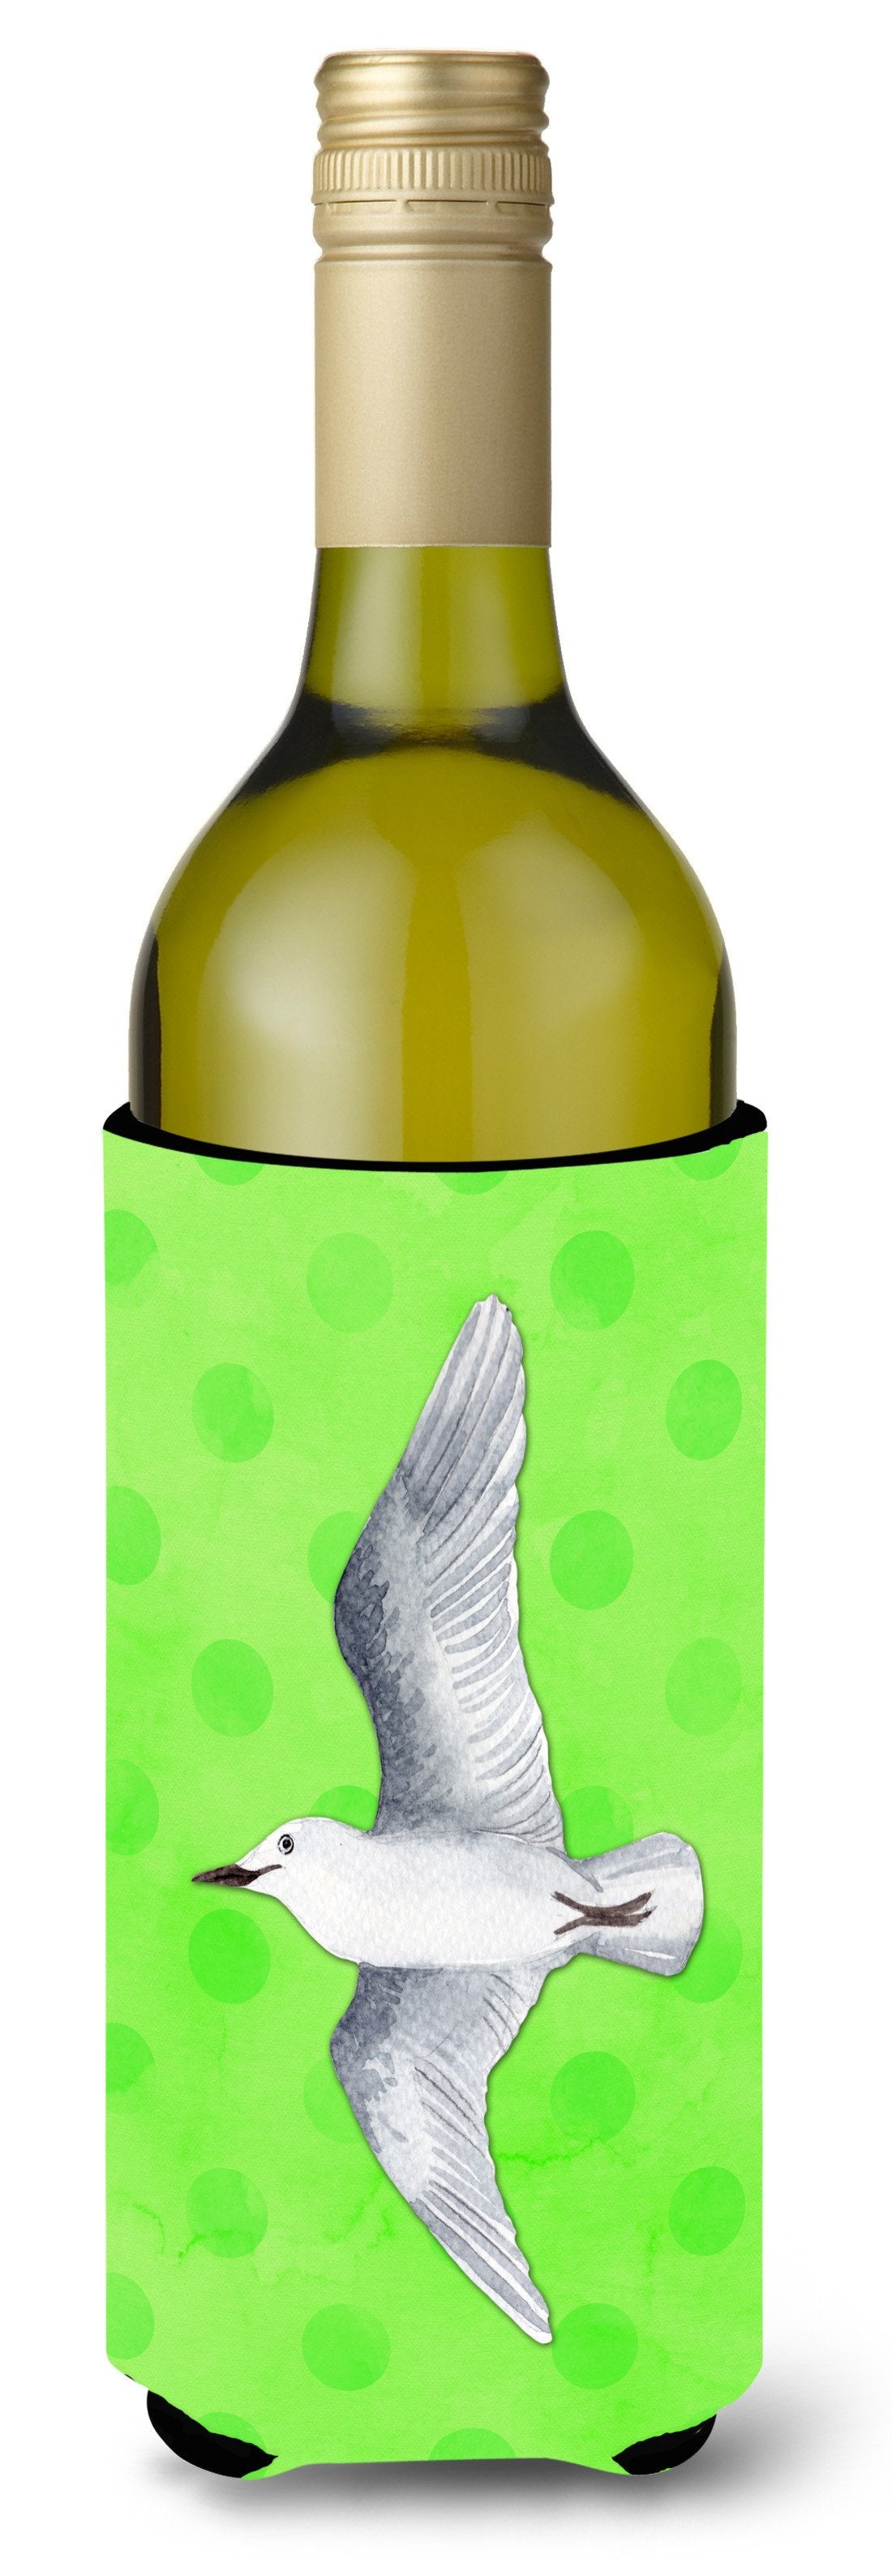 Sea Gull Green Polkadot Wine Bottle Beverge Insulator Hugger BB8225LITERK by Caroline's Treasures